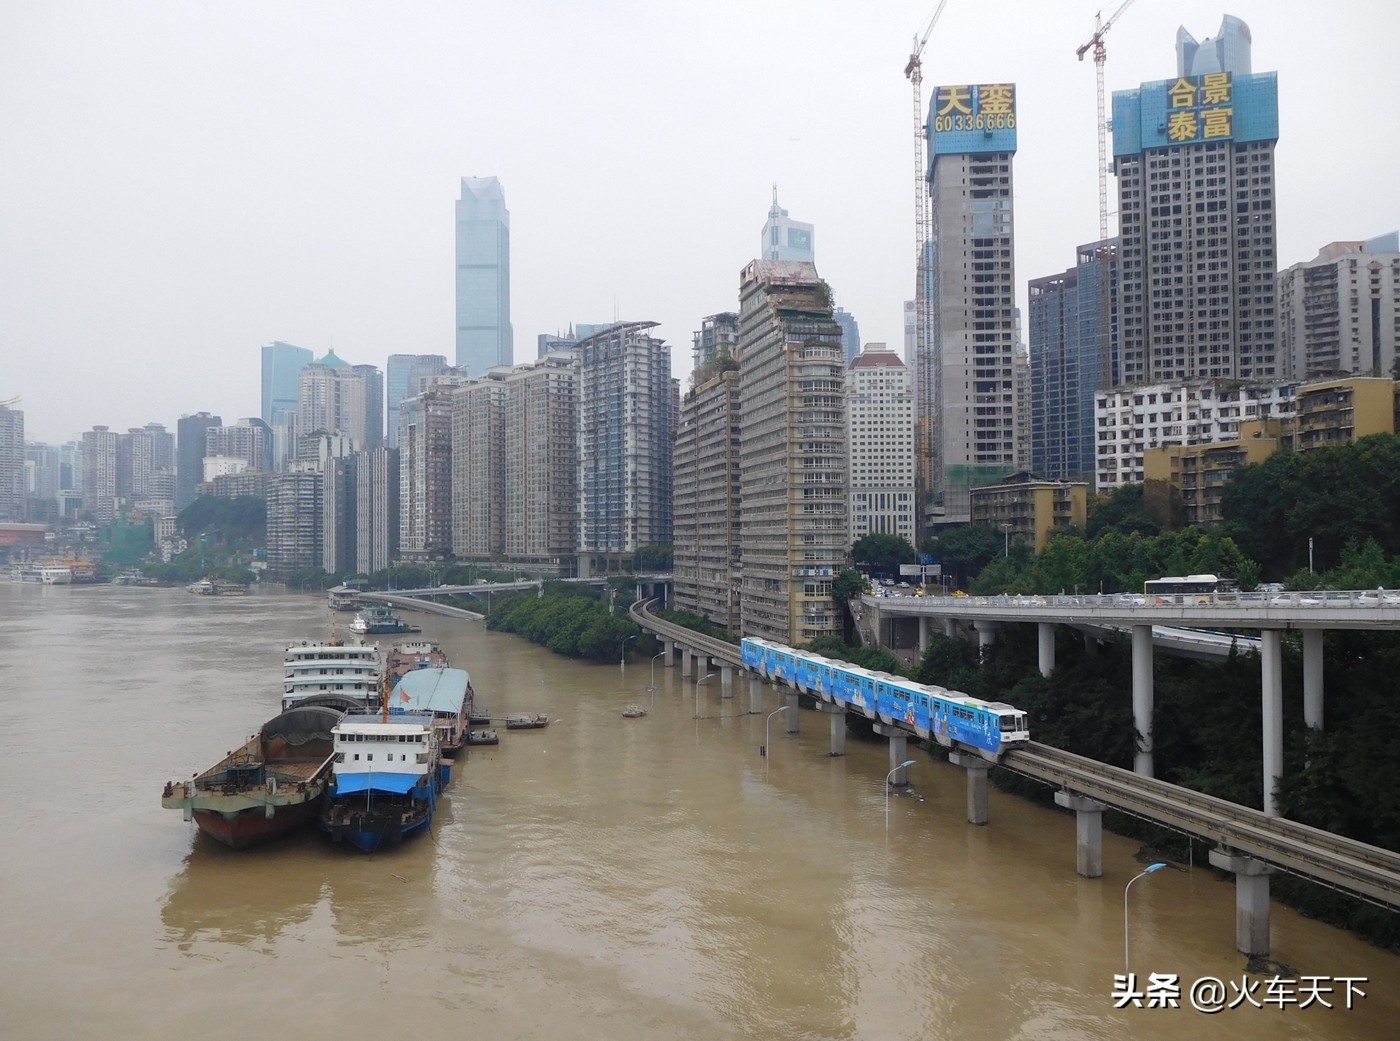 开通十几年的重庆轨道2号线 重庆具有代表性的轨道交通线